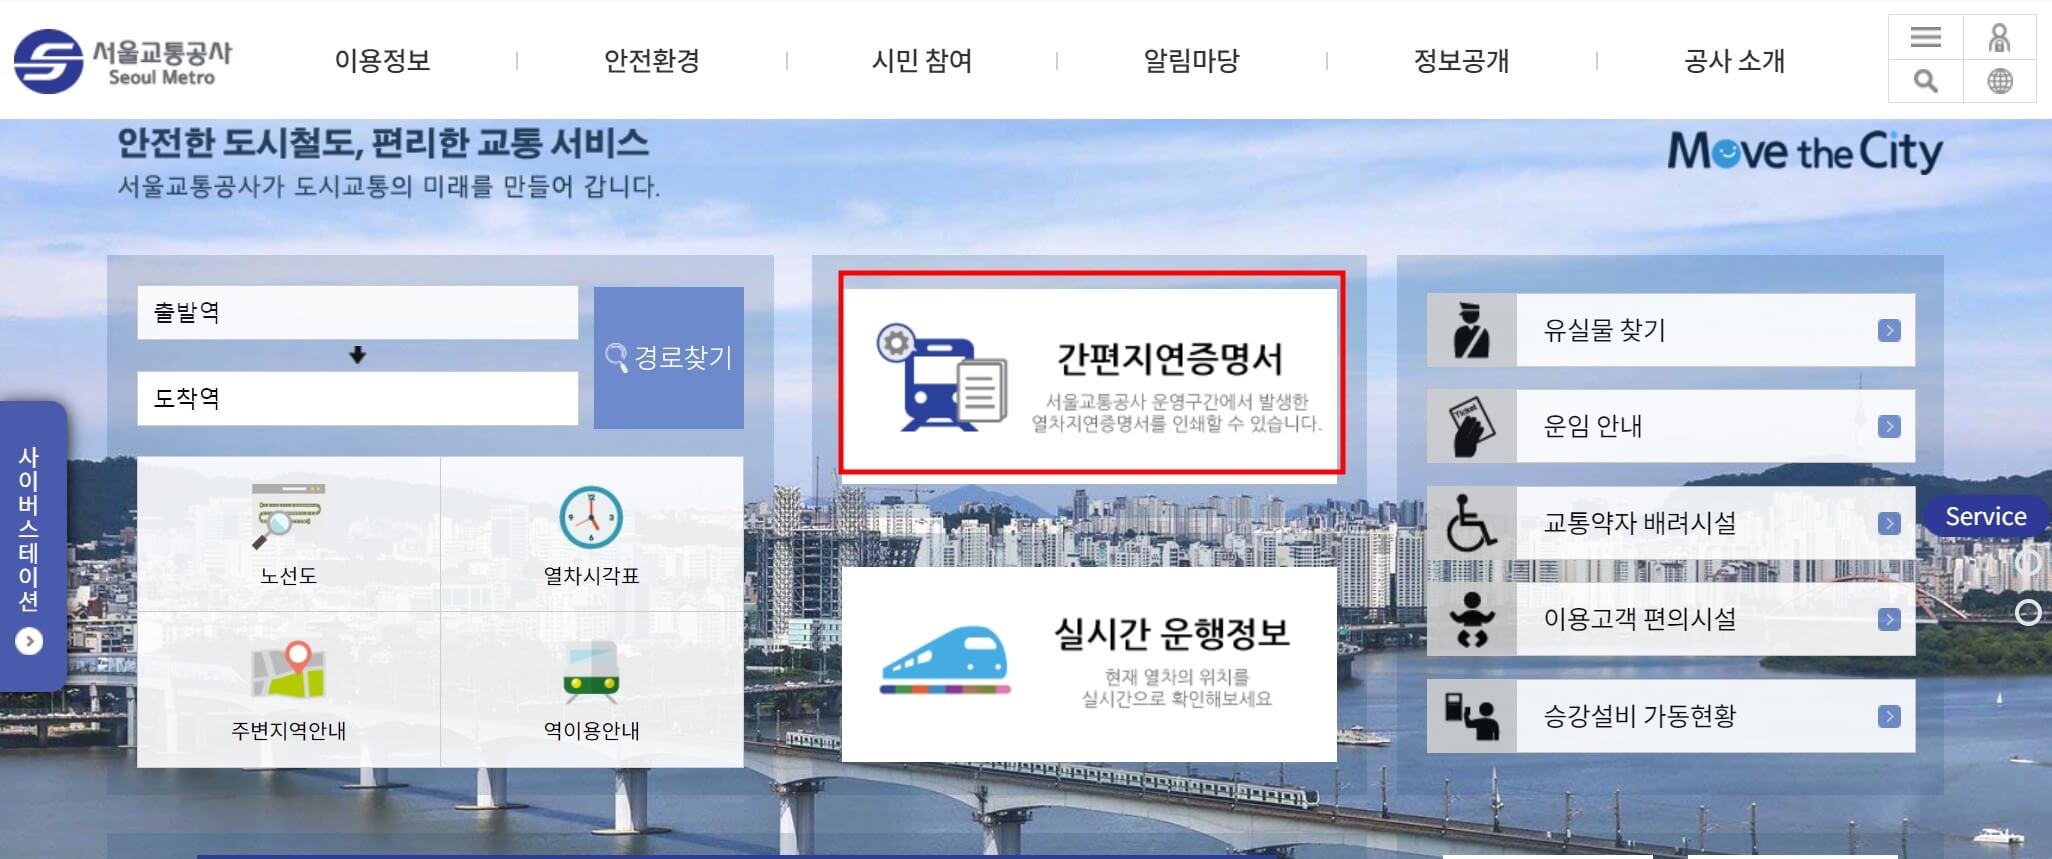 서울교통공사-홈페이지